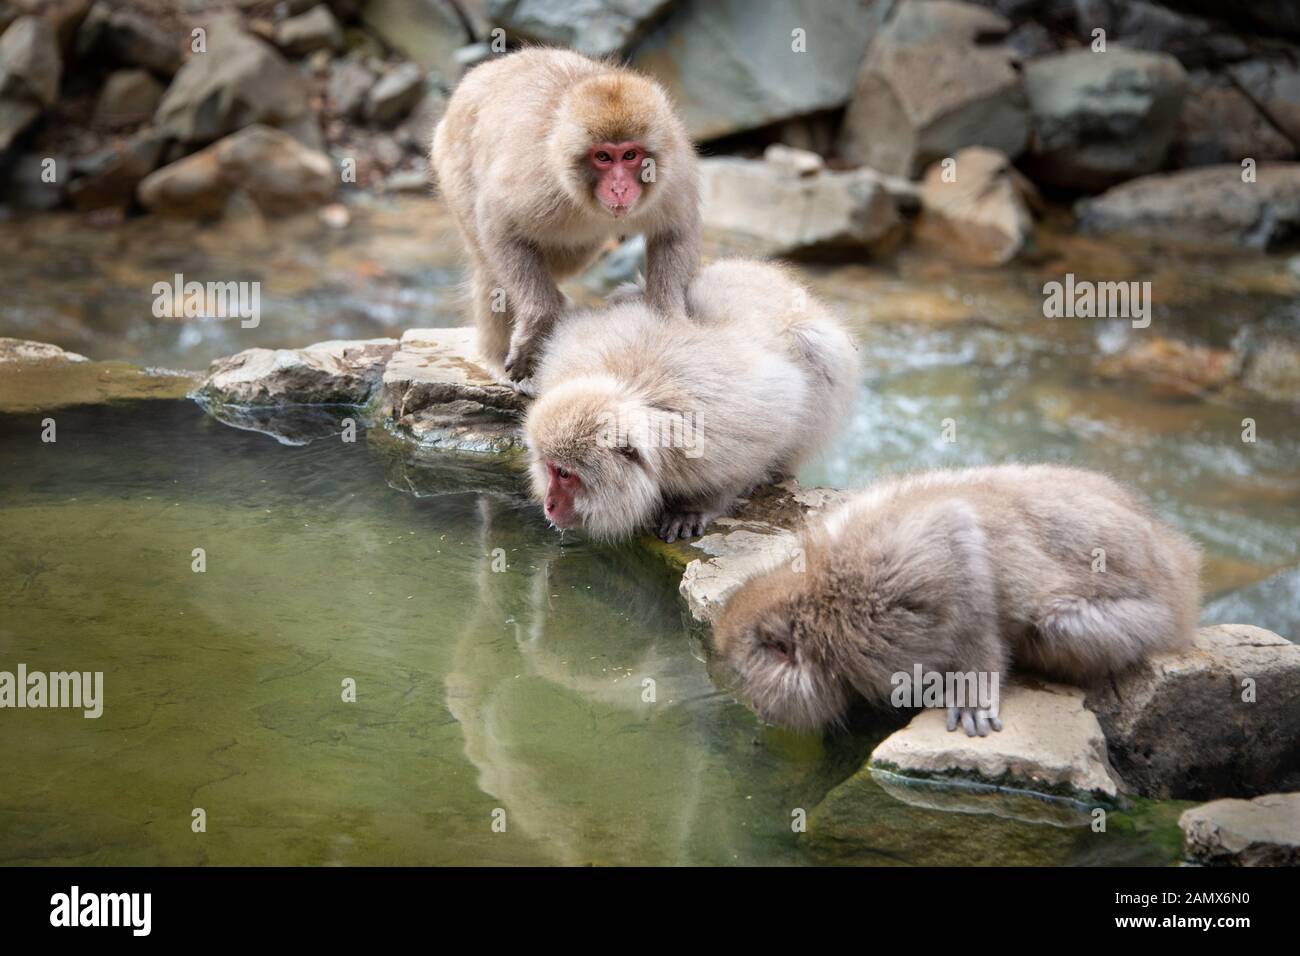 Los macacos japoneses beber agua del manantial caliente en los medios Jigokudani (Valle del Infierno), parque de monos de nieve en Nagano, Japón Foto de stock